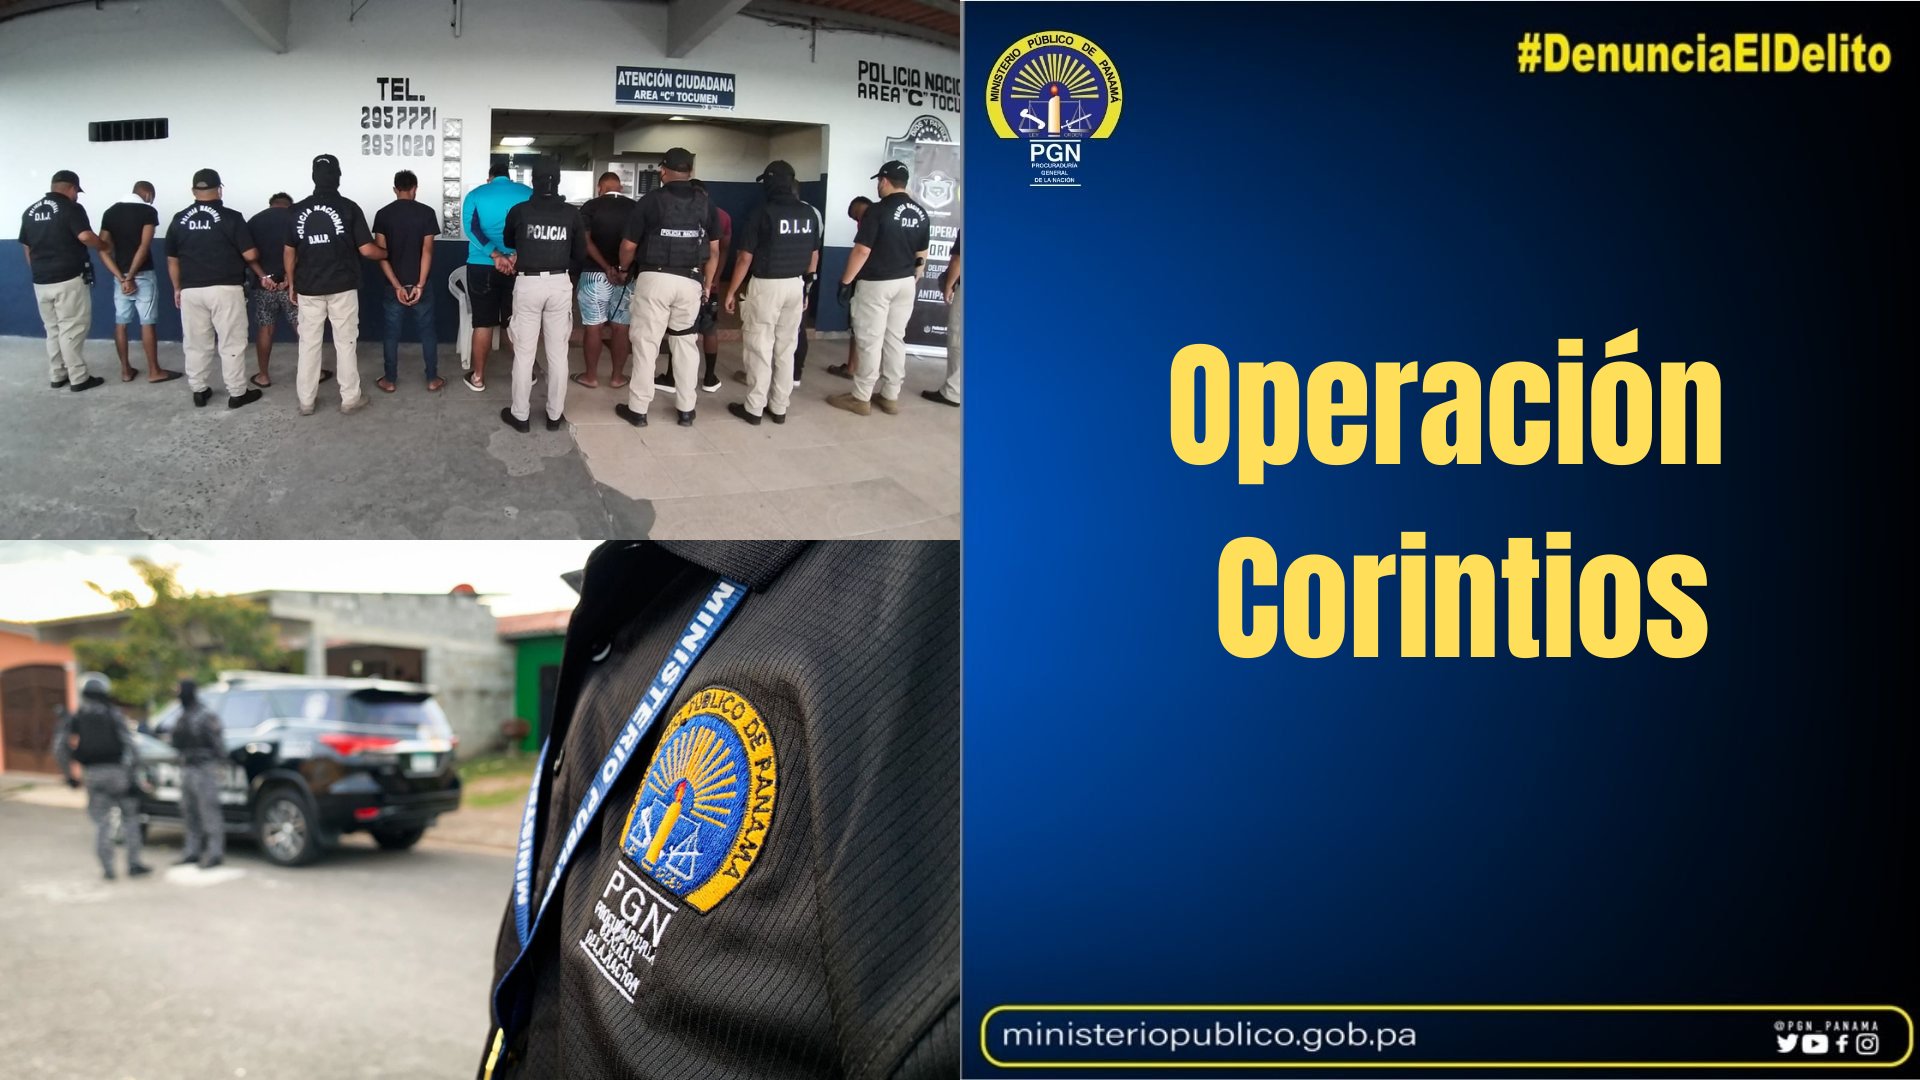 Aprehenden a 11 personas en Operación Corintios realizada por la Fiscalía Especializada en Delitos de Asociación Ilícita y la Policía Nacional